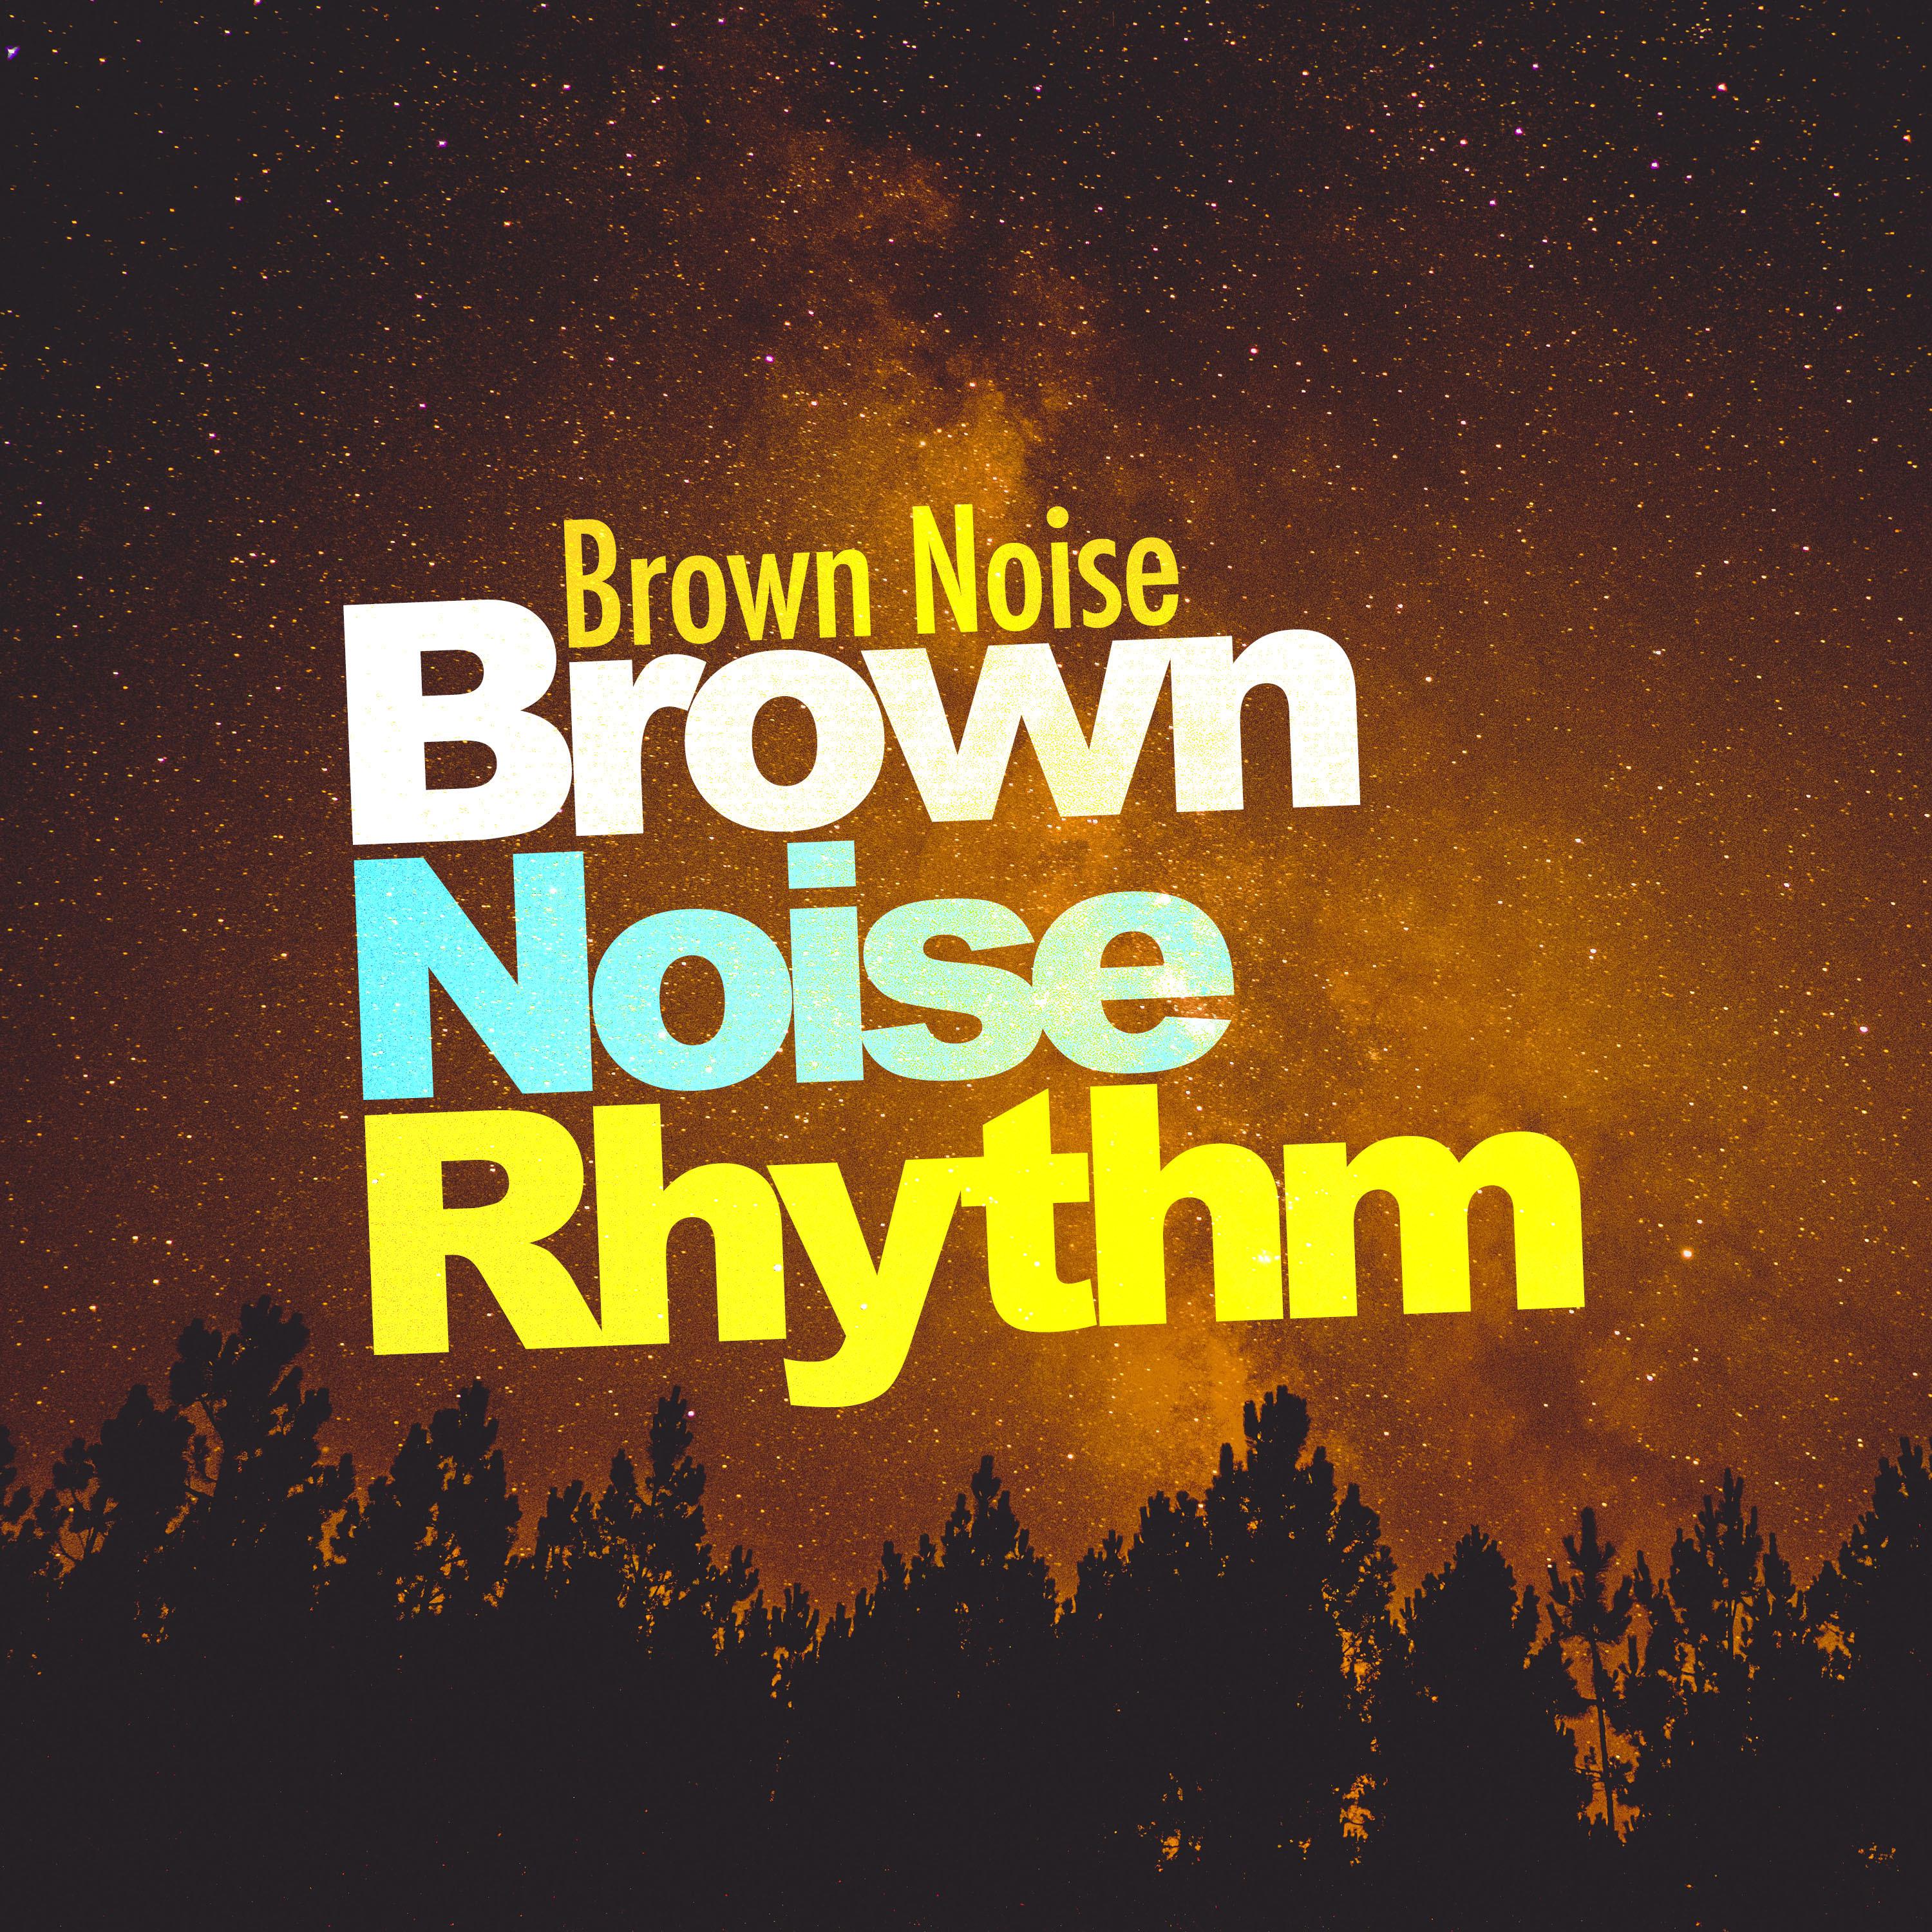 Brown Noise Rhythm